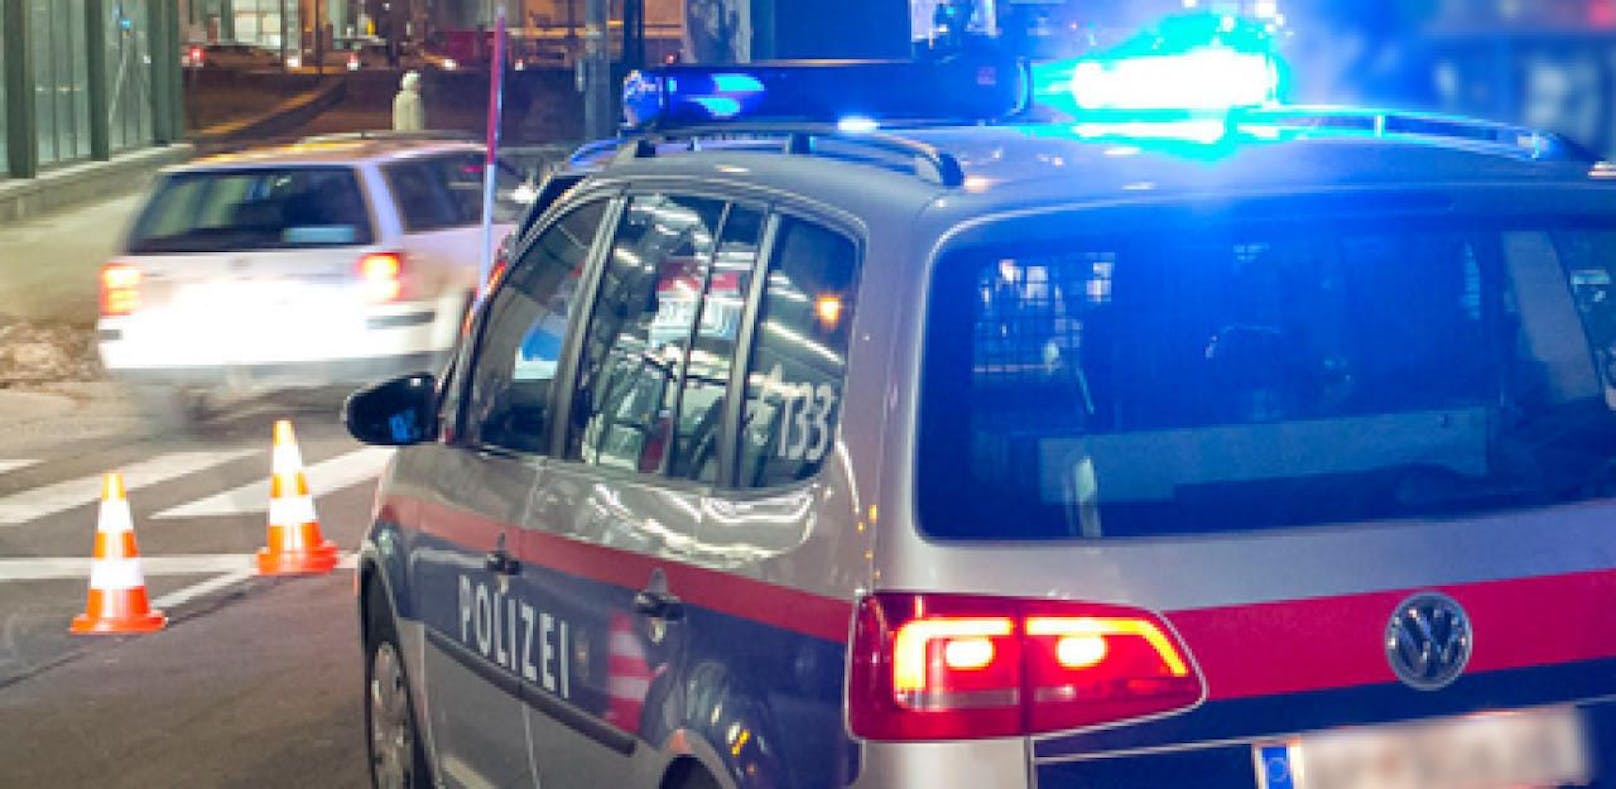 Ein slowakischer Staatsbürger war ohne Führerschein und mit einem gestohlenen Auto unterwegs. Die Polizei nahm ihn fest.